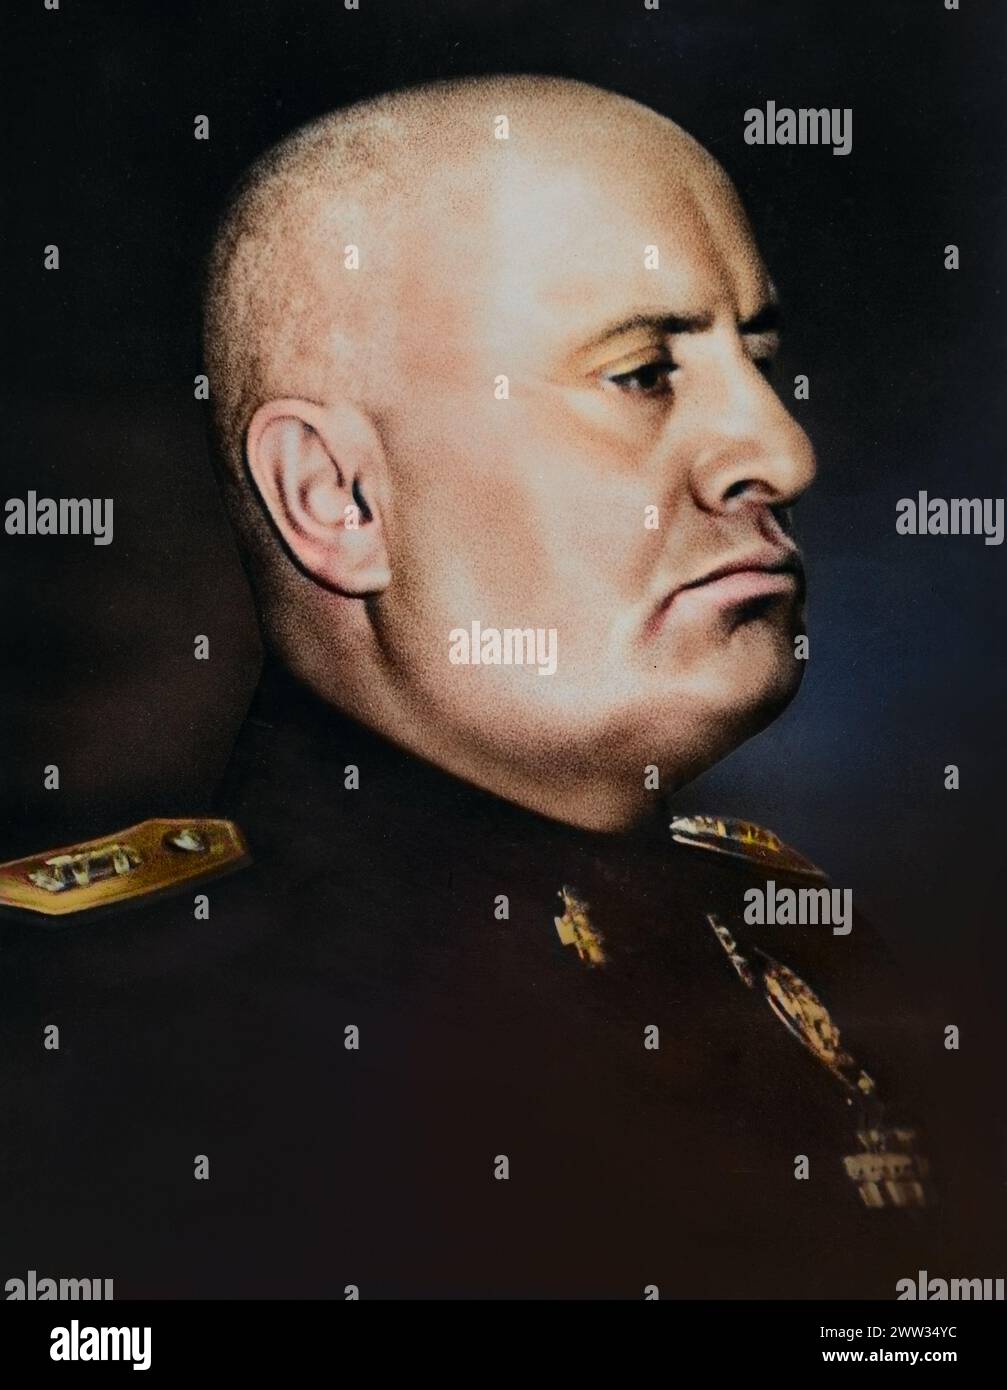 Portrait de Benito Mussolini comme dictateur de l'Italie (entre 1922 et 1943), publié en 1943 pour consouvenir de son 60ème anniversaire - colorisé Banque D'Images